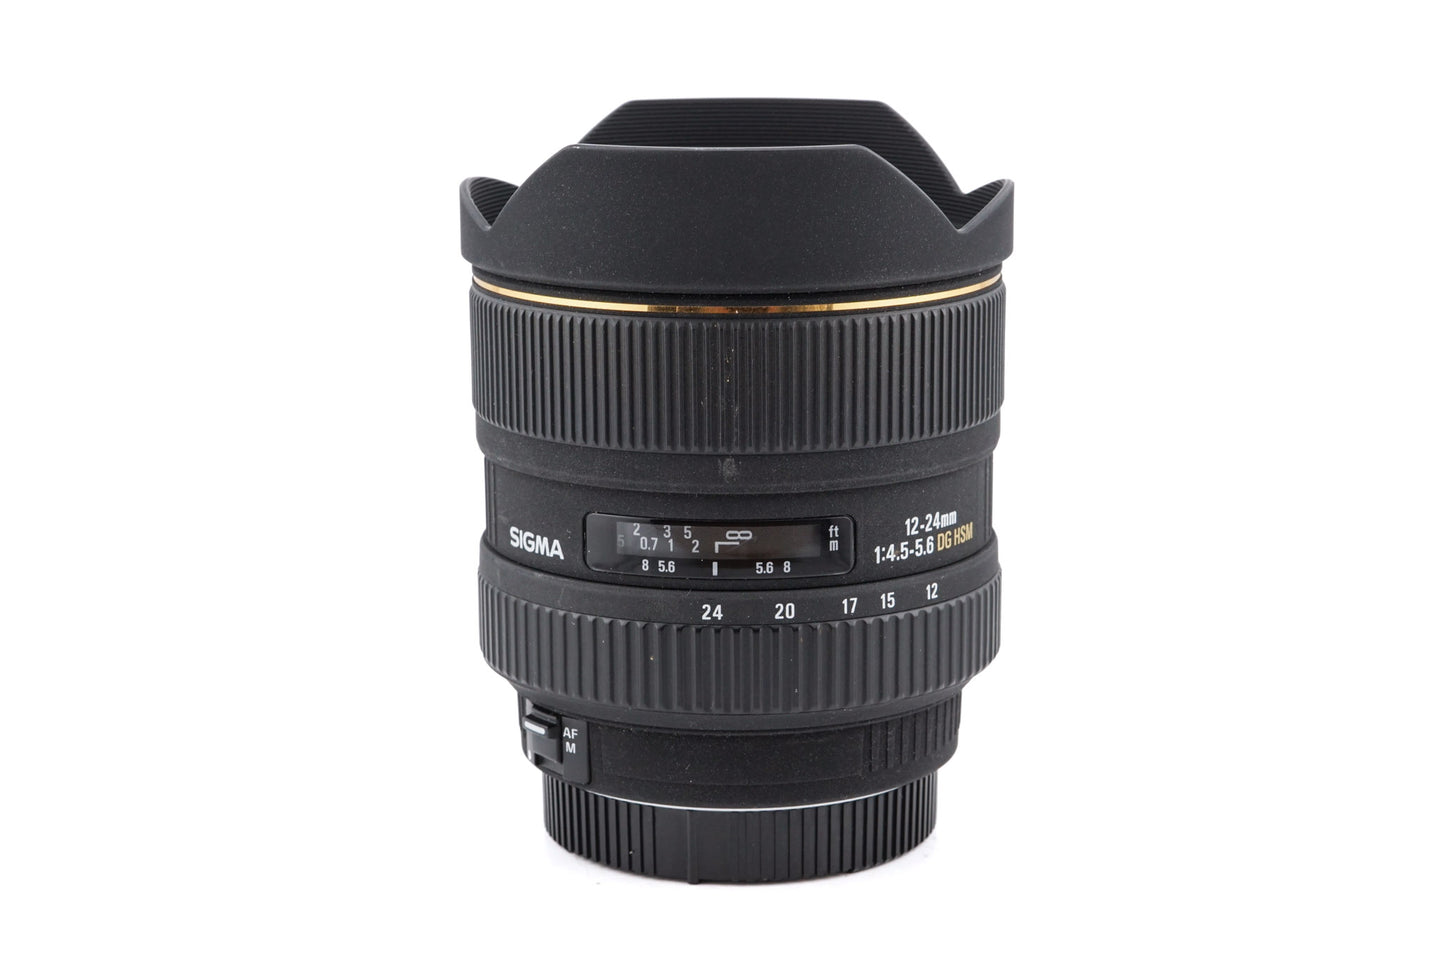 Sigma 12-24mm f4.5-5.6 DG EX HSM - Lens